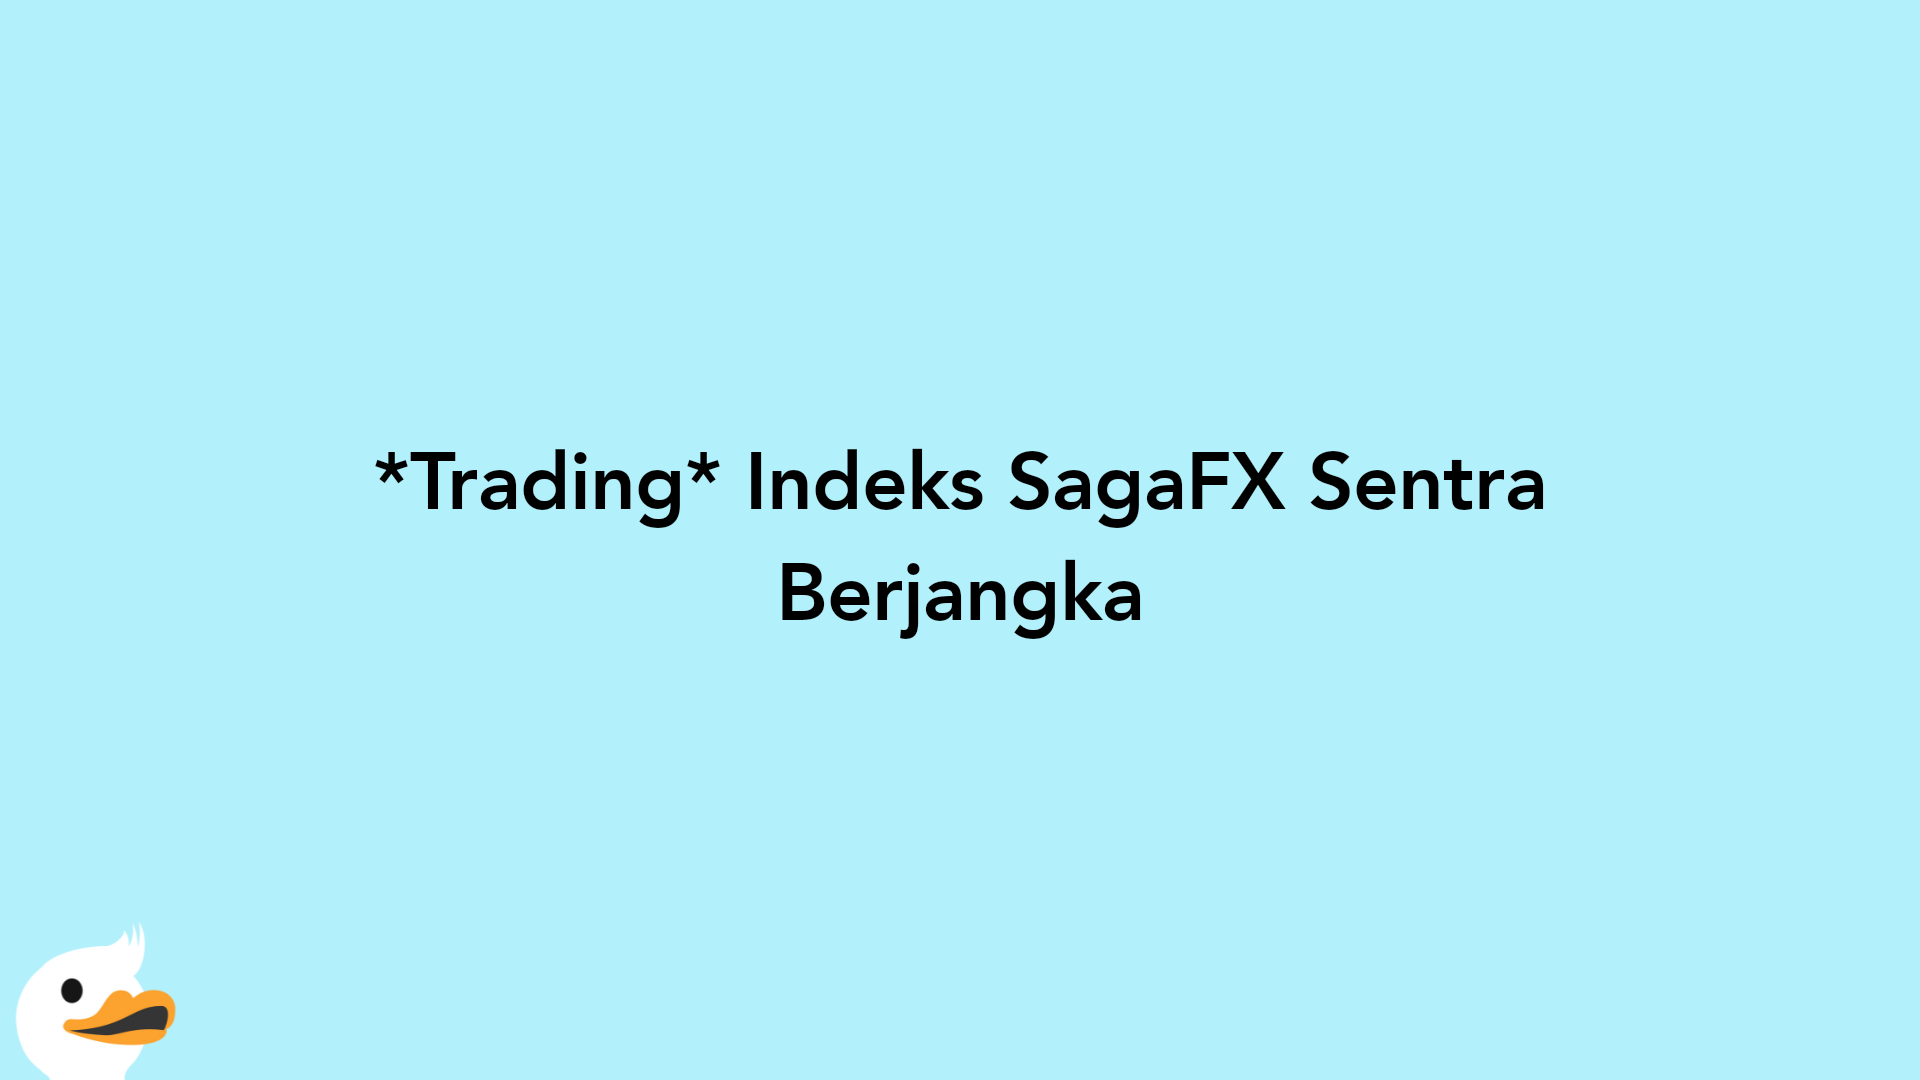 Trading Indeks SagaFX Sentra Berjangka